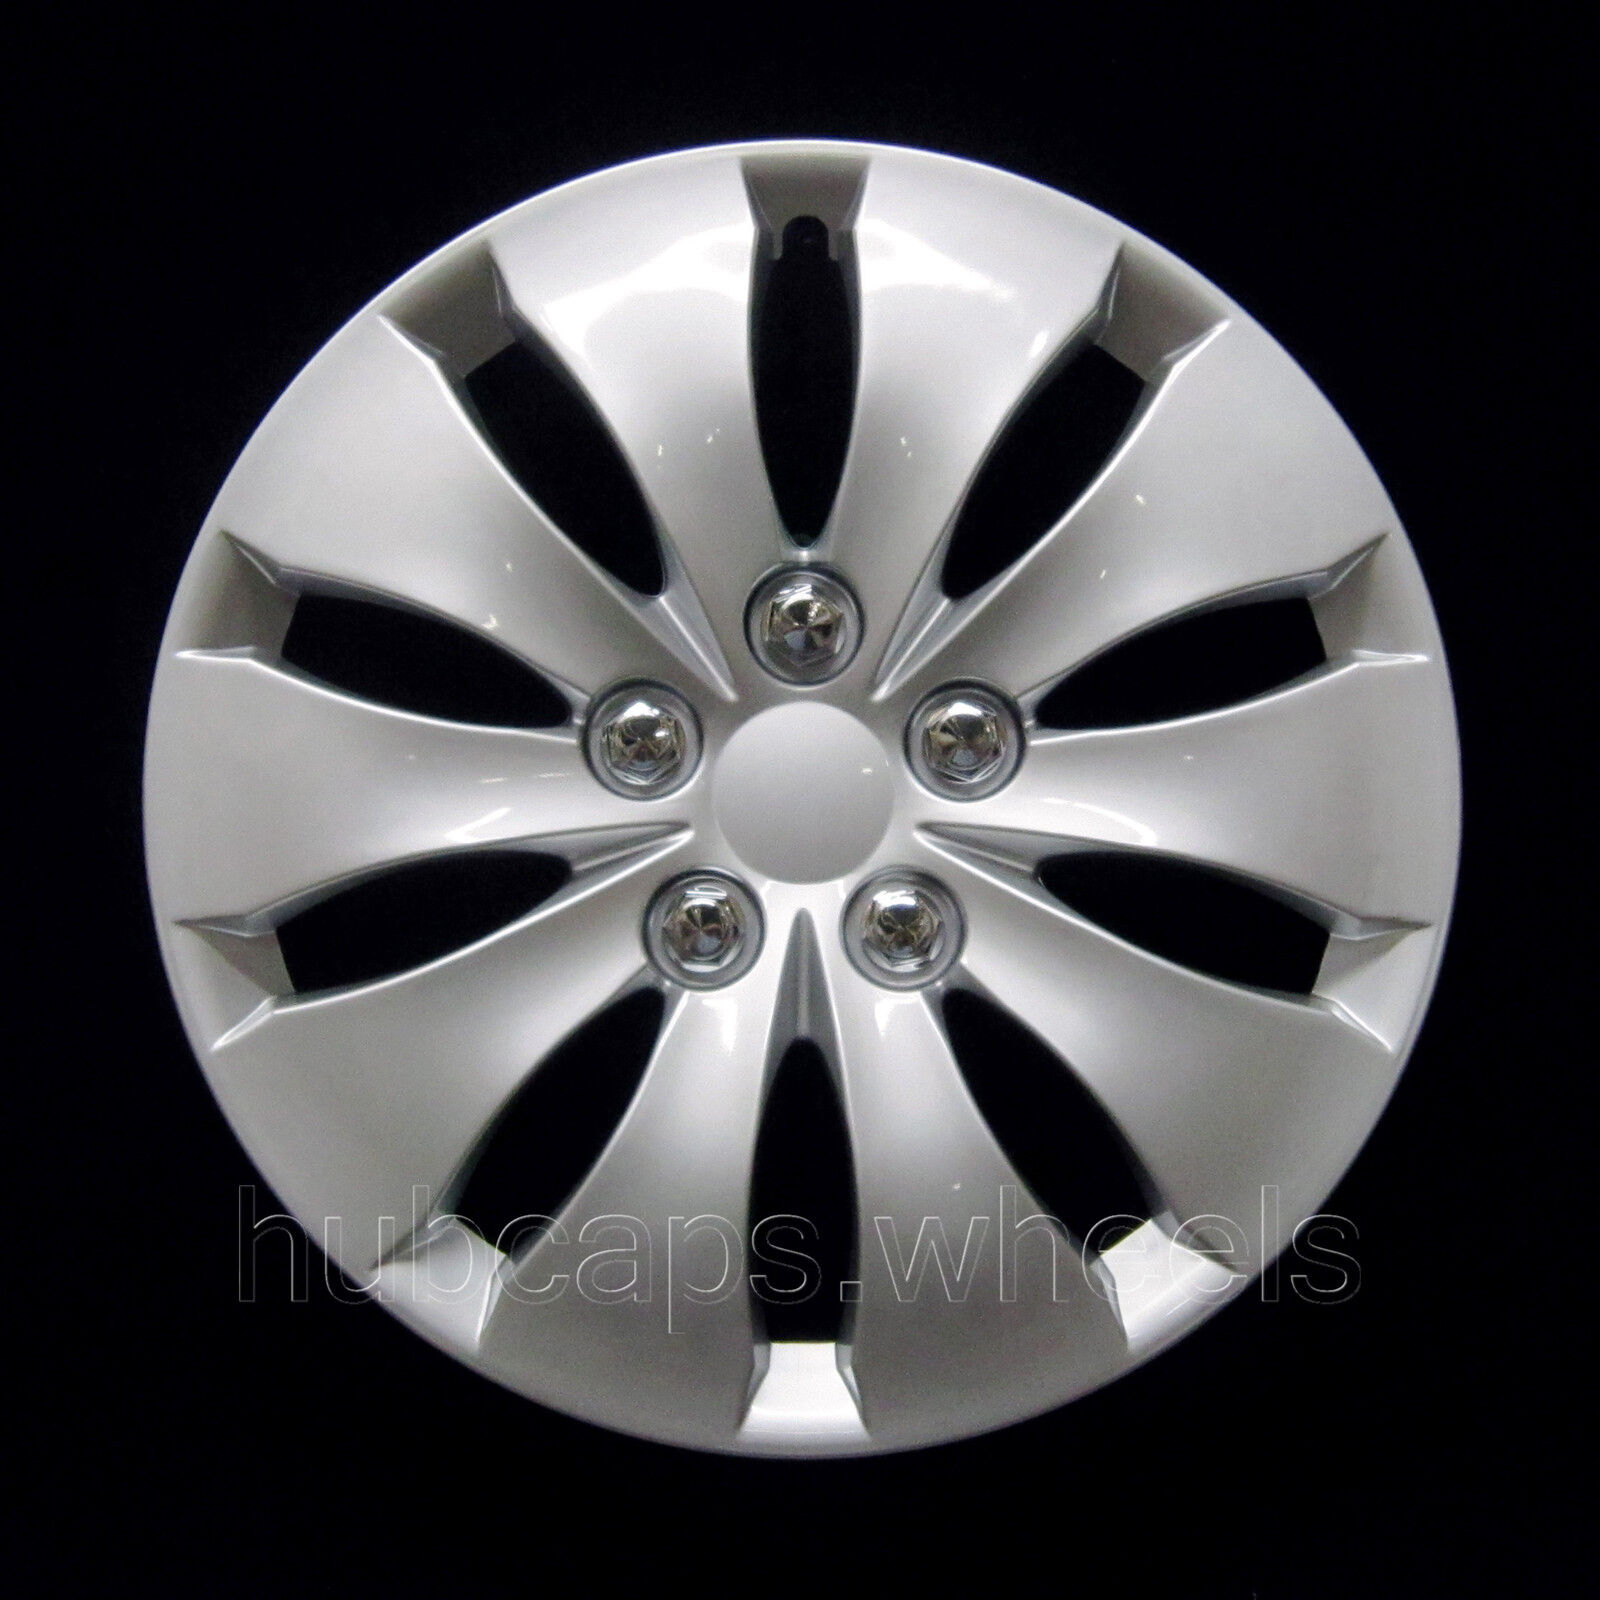 NEW Hubcap for Honda Accord 2008-2012 - Premium Replica Wheel Cover Silver 55071